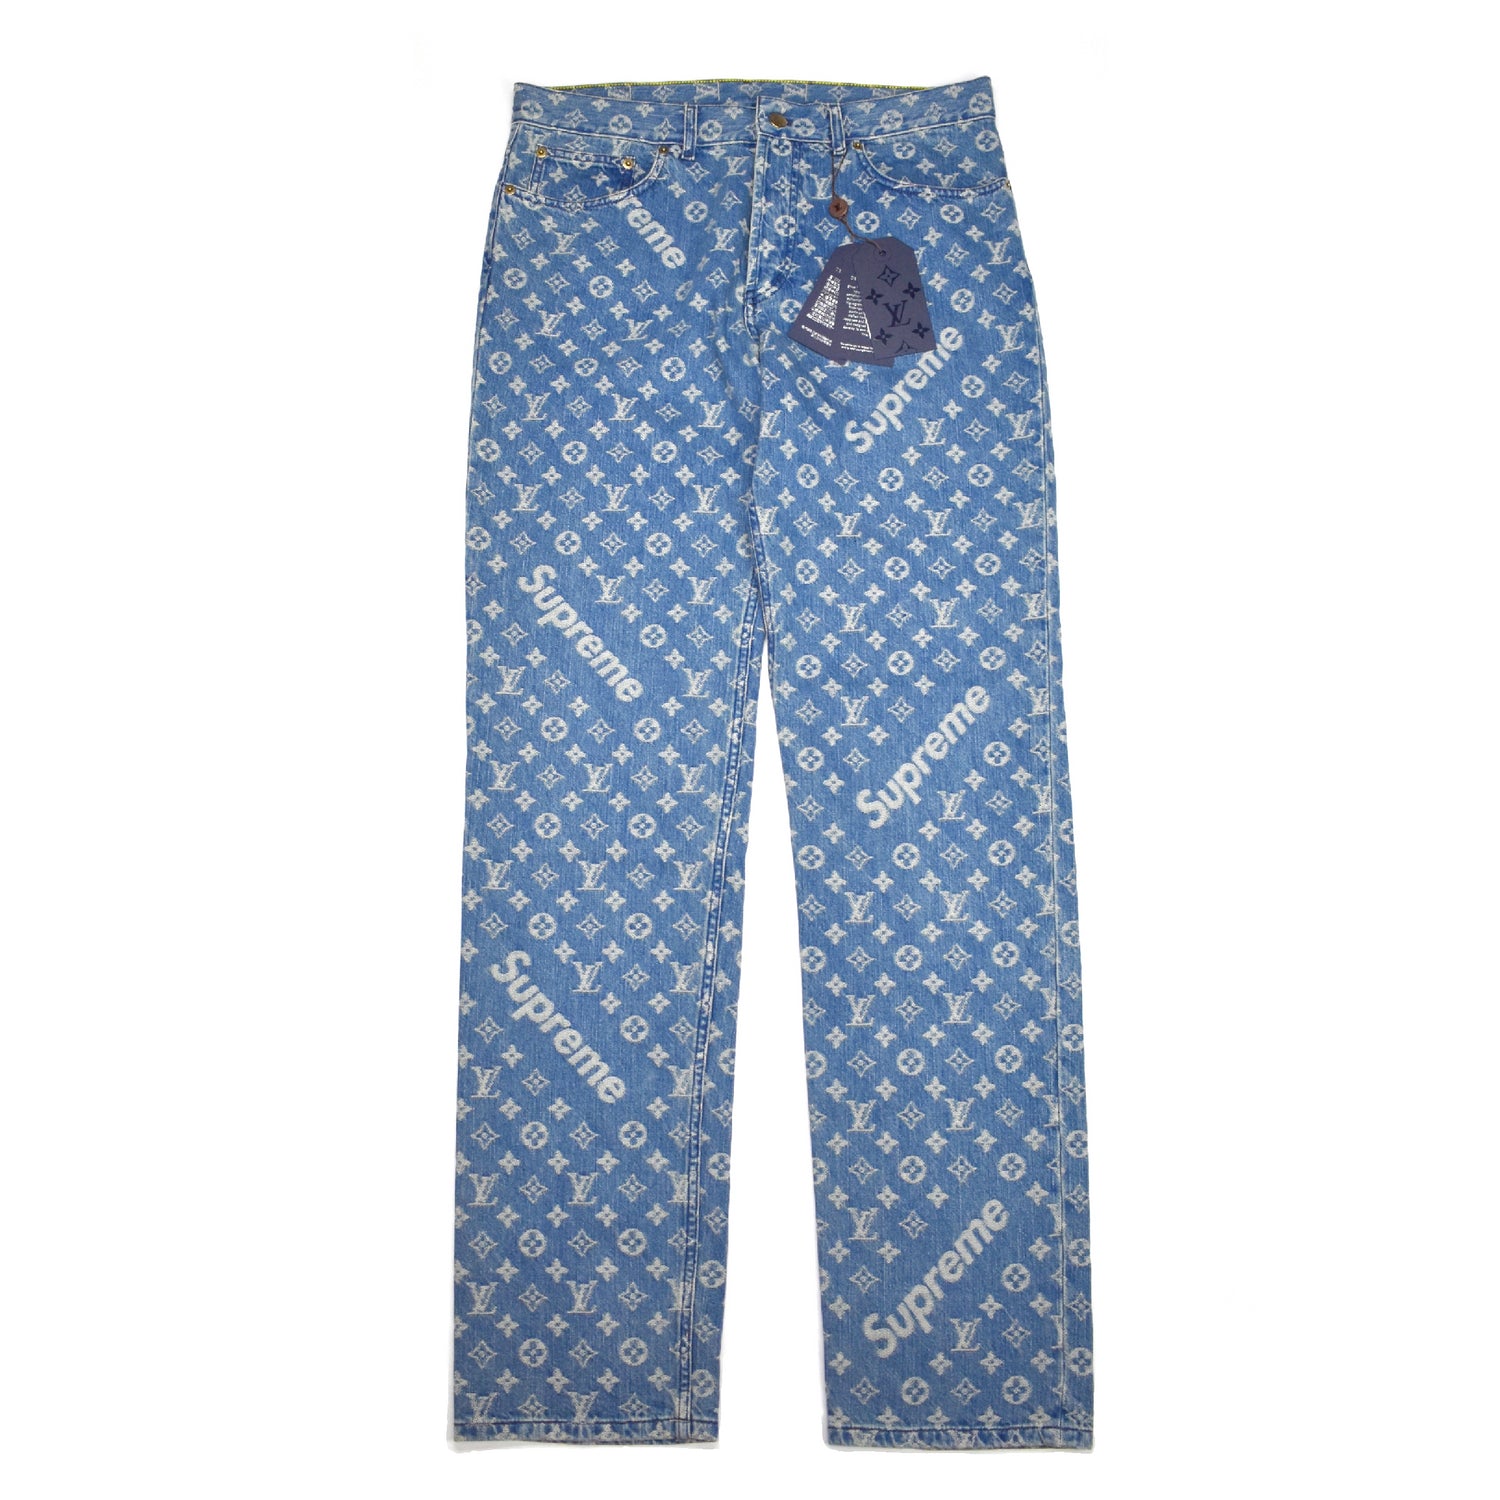 Louis Vuitton Supreme Blue Monogram Jeans